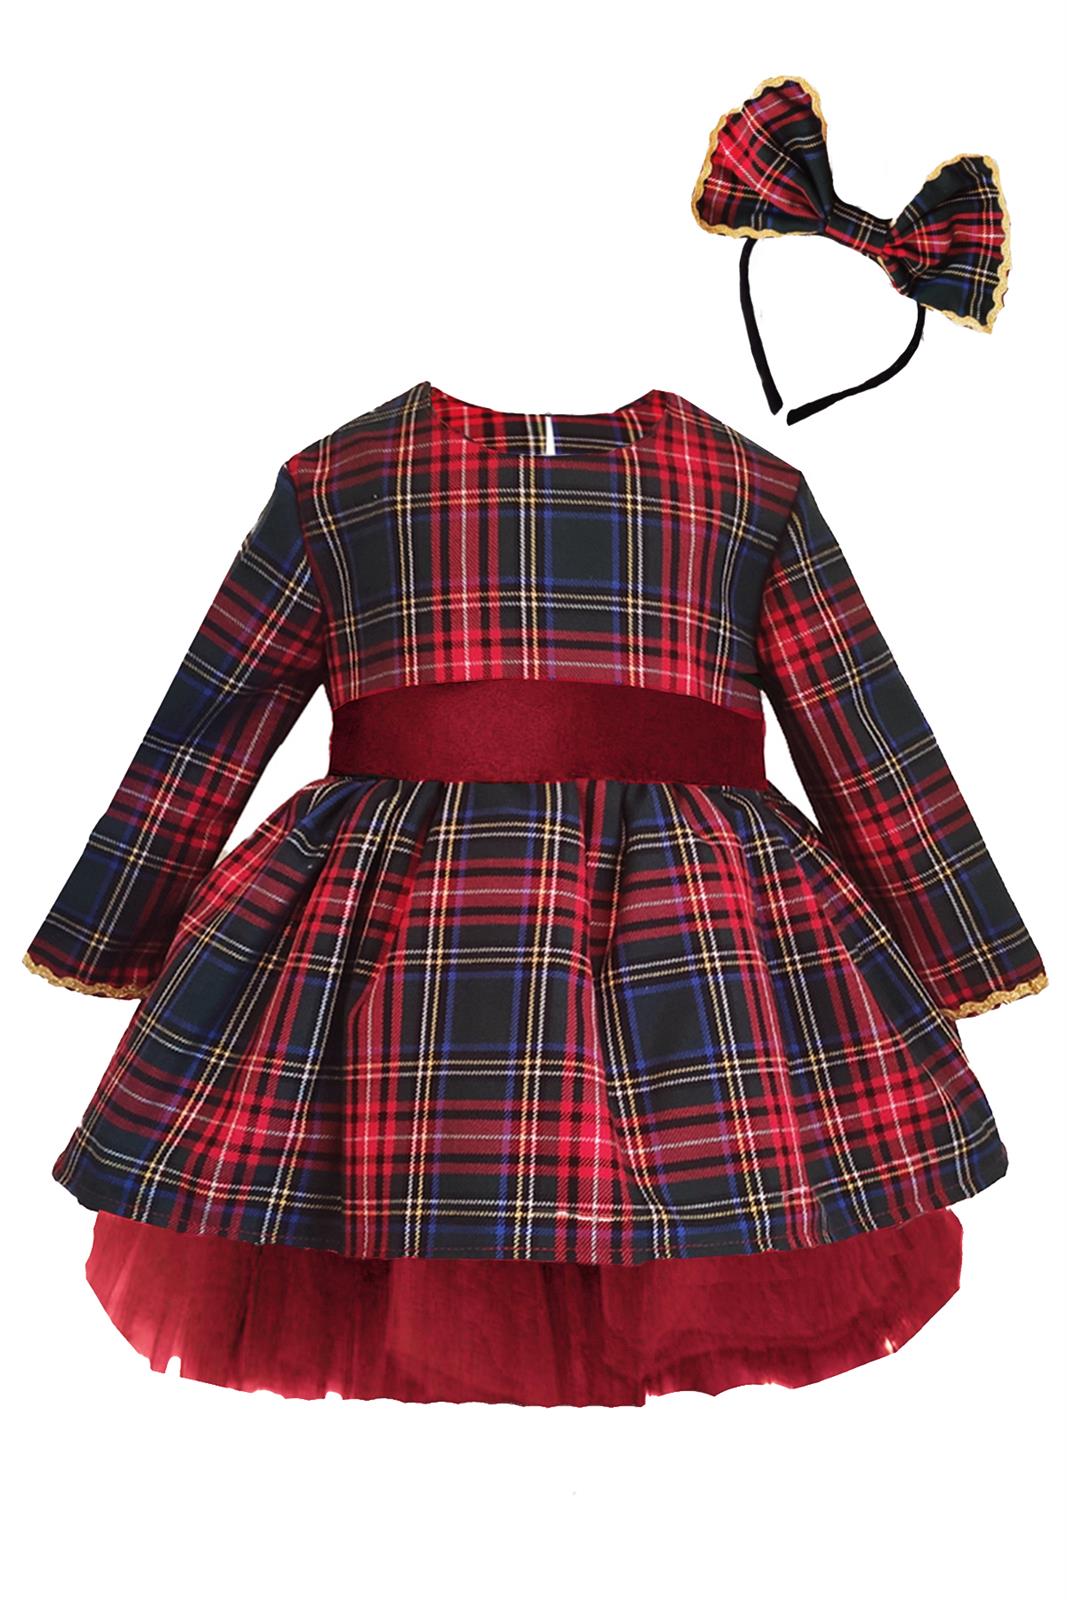 SYB202112 Shecco Babba Kız Çocuk Tütü Elbise Taç Takım Fiyonk 1-8 Yaş Kırmızı